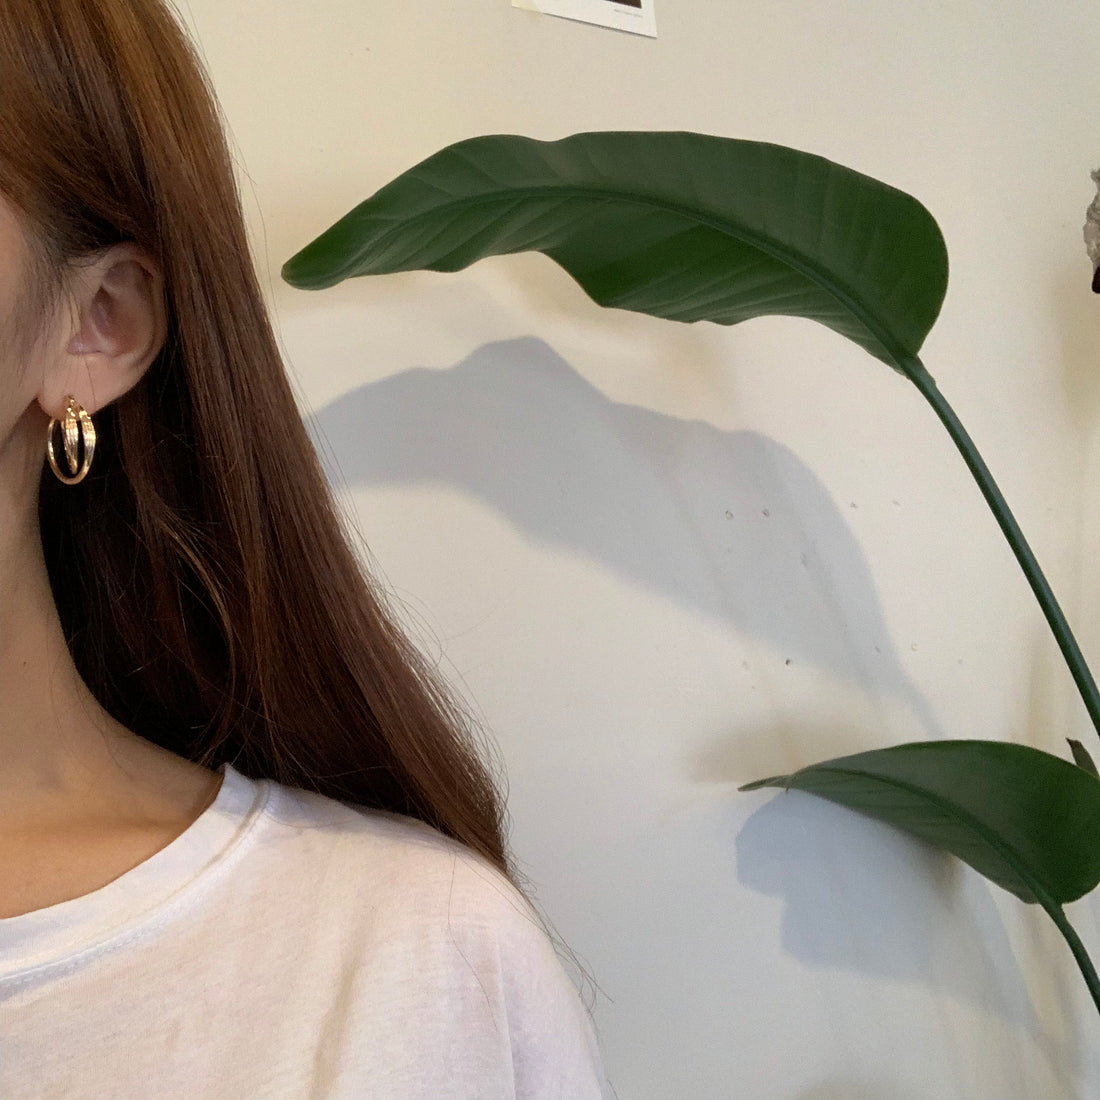 Minimalist Double Hoop earrings - MARMELO USA